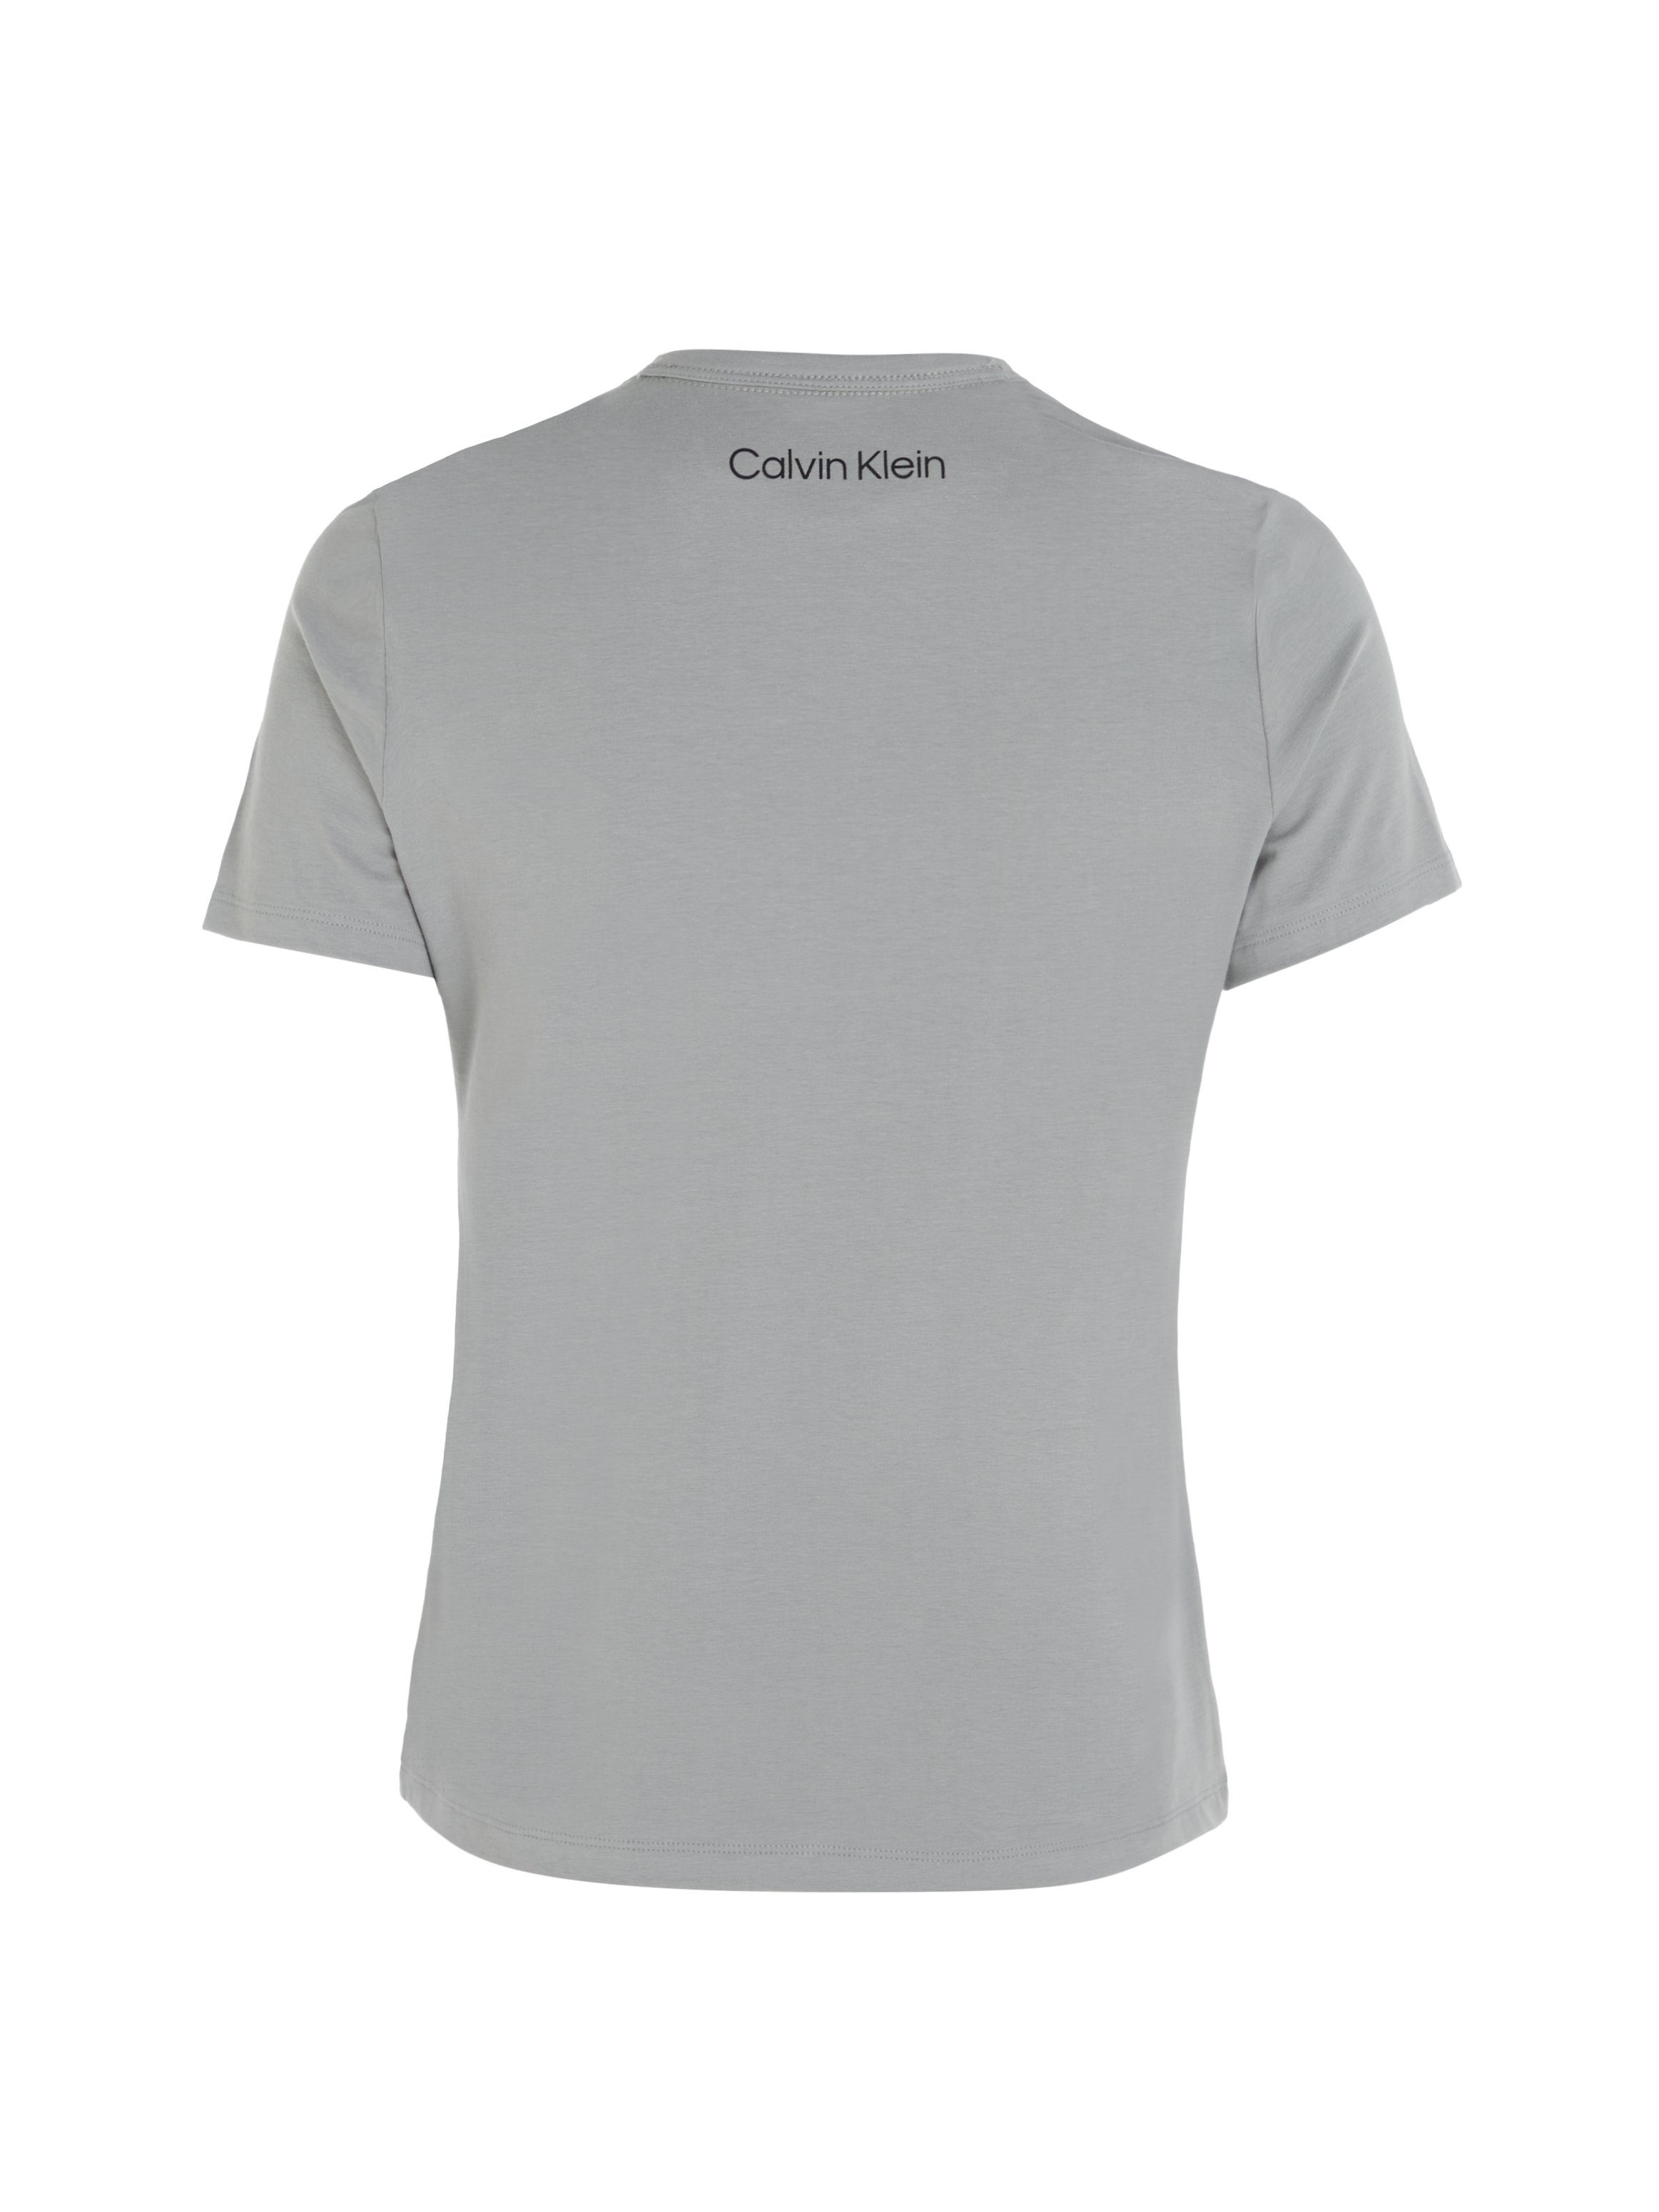 Calvin Klein CREW GREY-HEATHER Kurzarmshirt NECK S/S Underwear